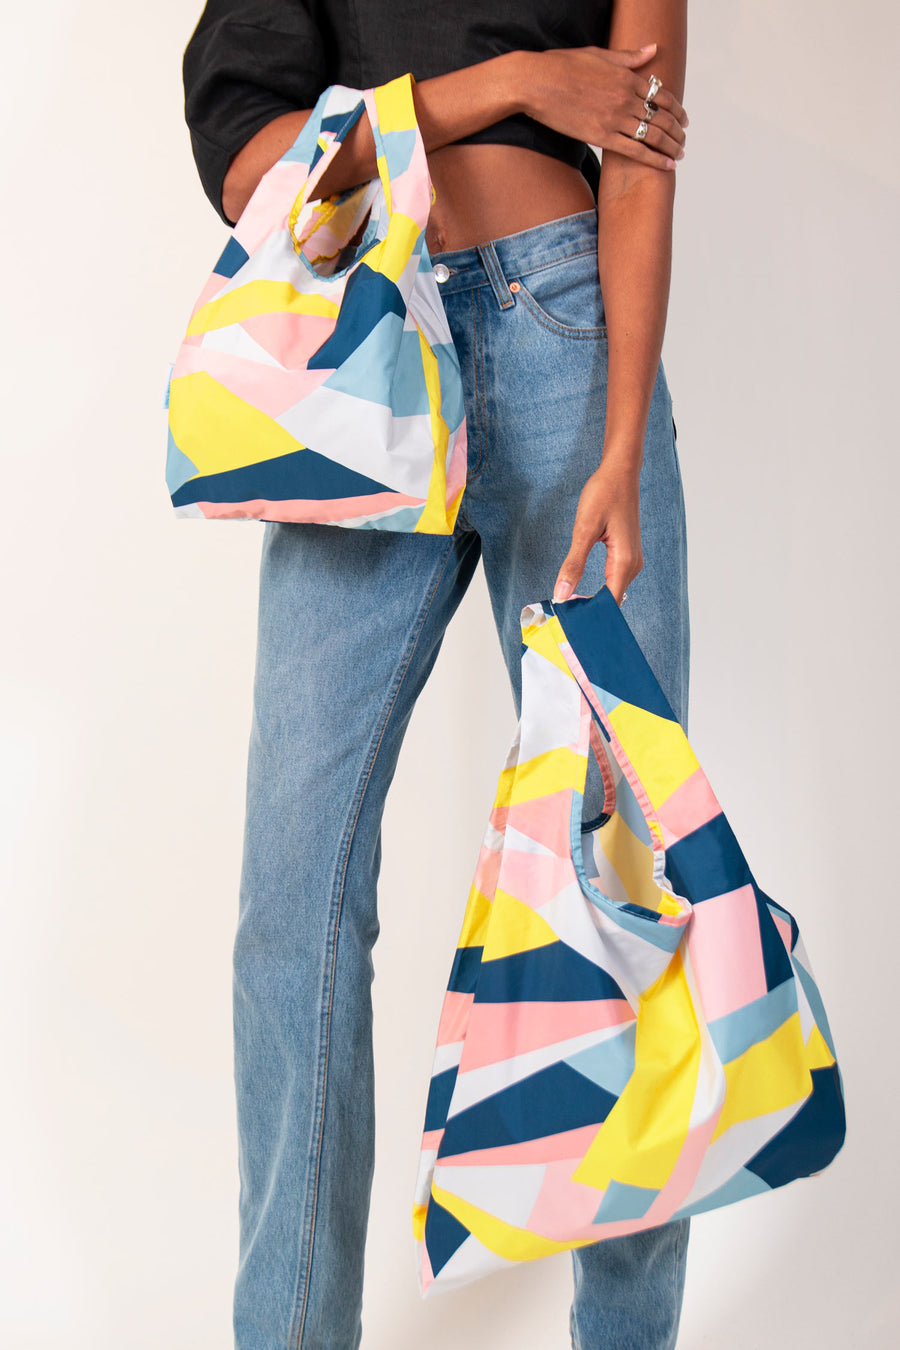 Mosaic - Mini & Medium Bundle - 100% recycled reusable bag - kind bag